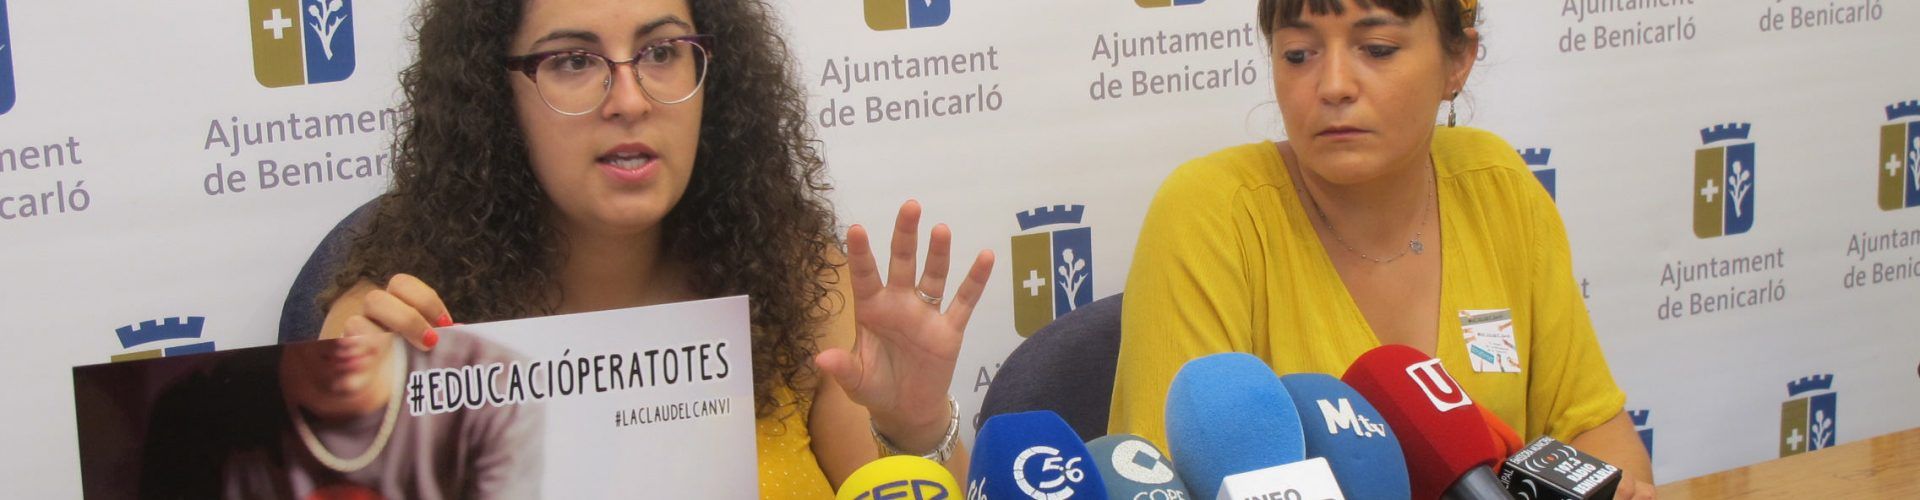 Benicarló posa en marxa una campanya per a reivindicar els drets de la joventut